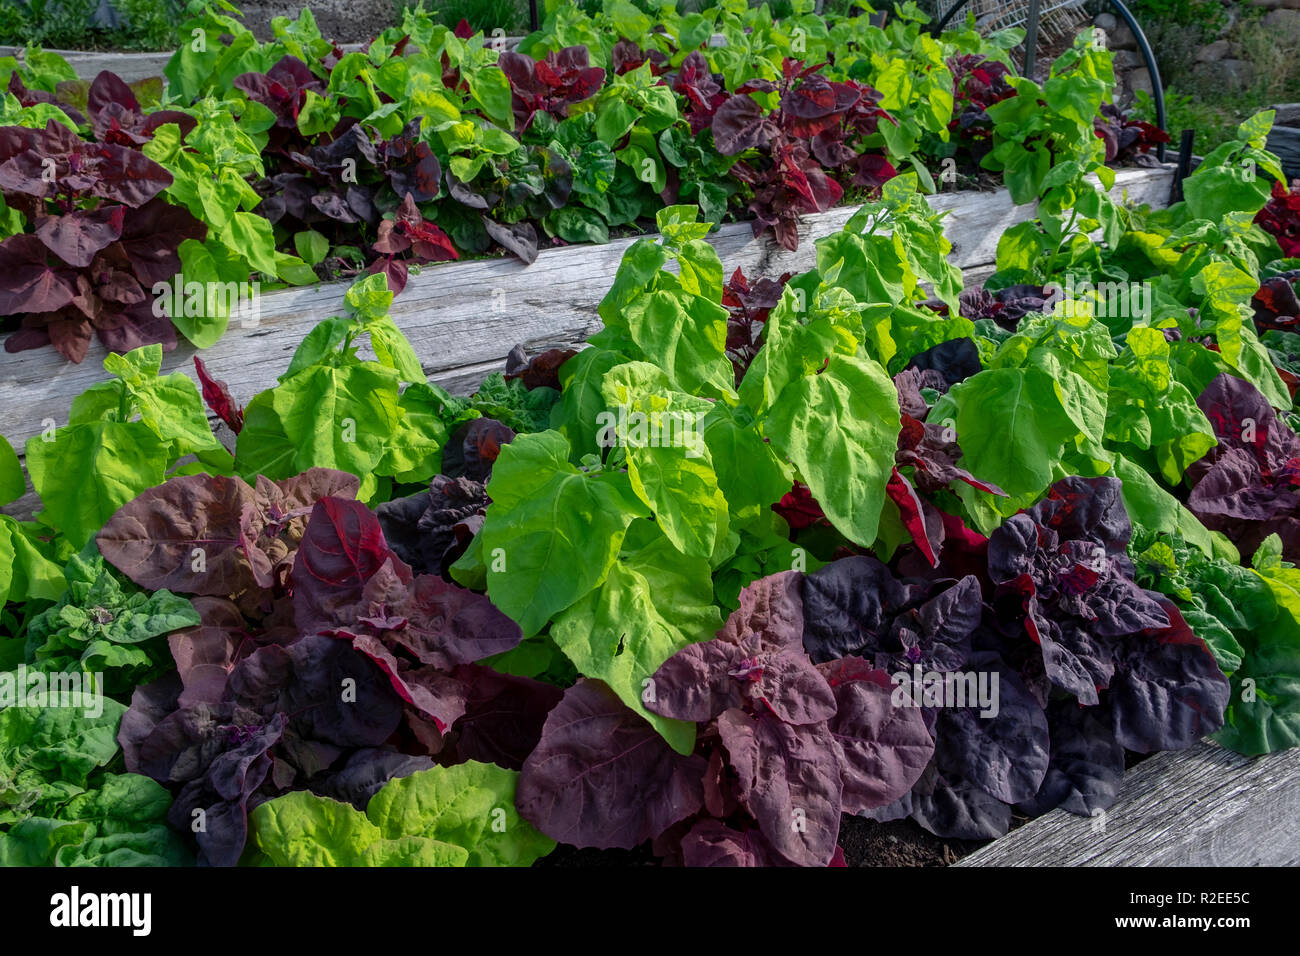 Il verde e il rosso, orach atripex hortensis, una varietà di saltbush relative agli spinaci forniscono un contrasto splash colur nell'orto. Foto Stock